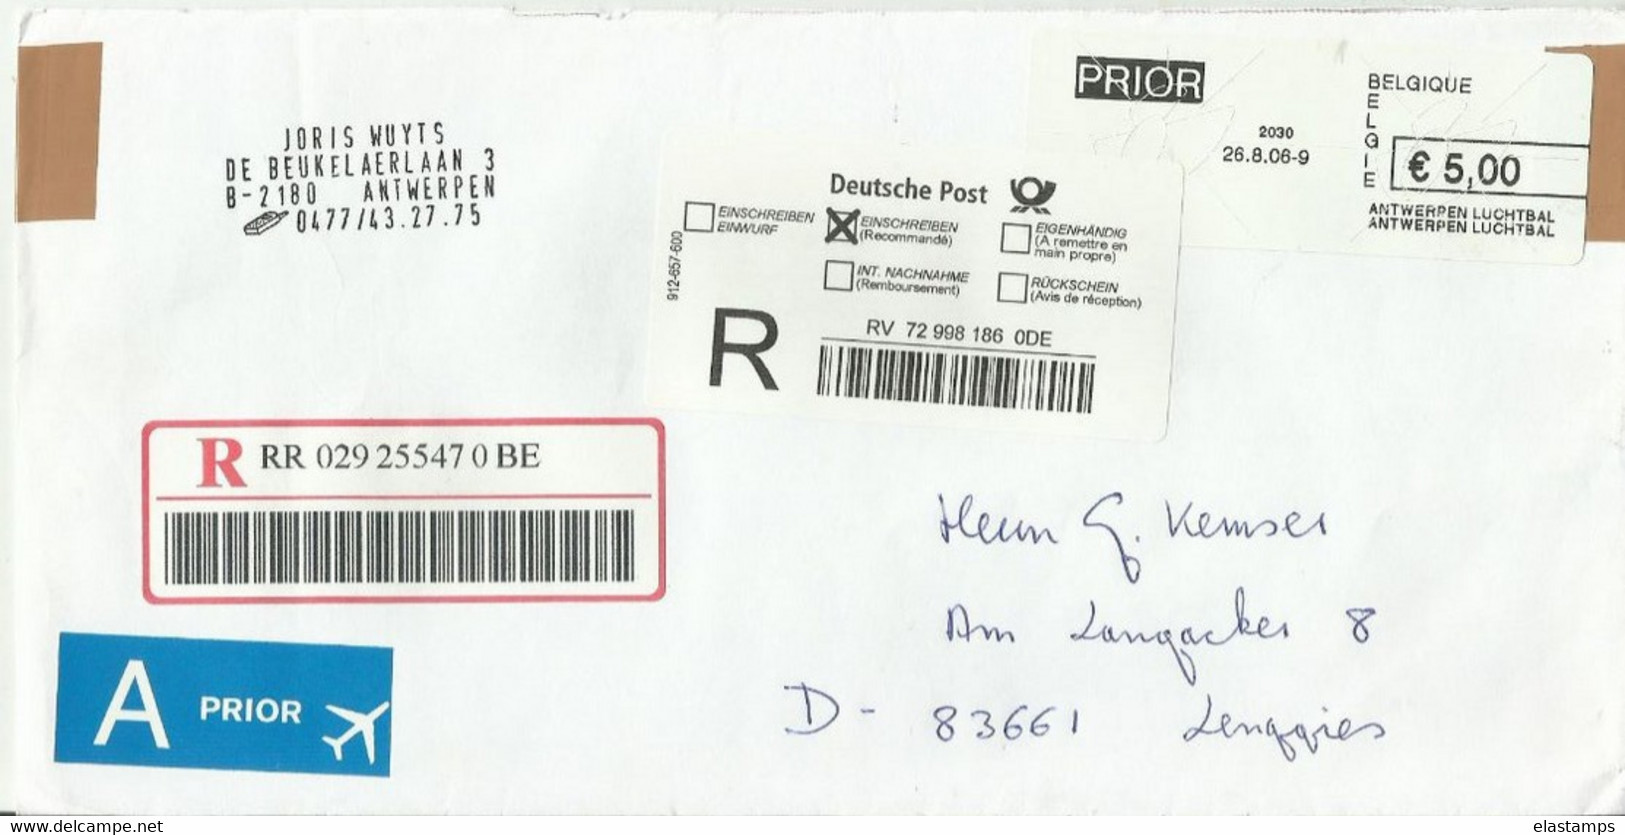 BE CV 2006 5 EURO - Balkenstempel: Einladungen